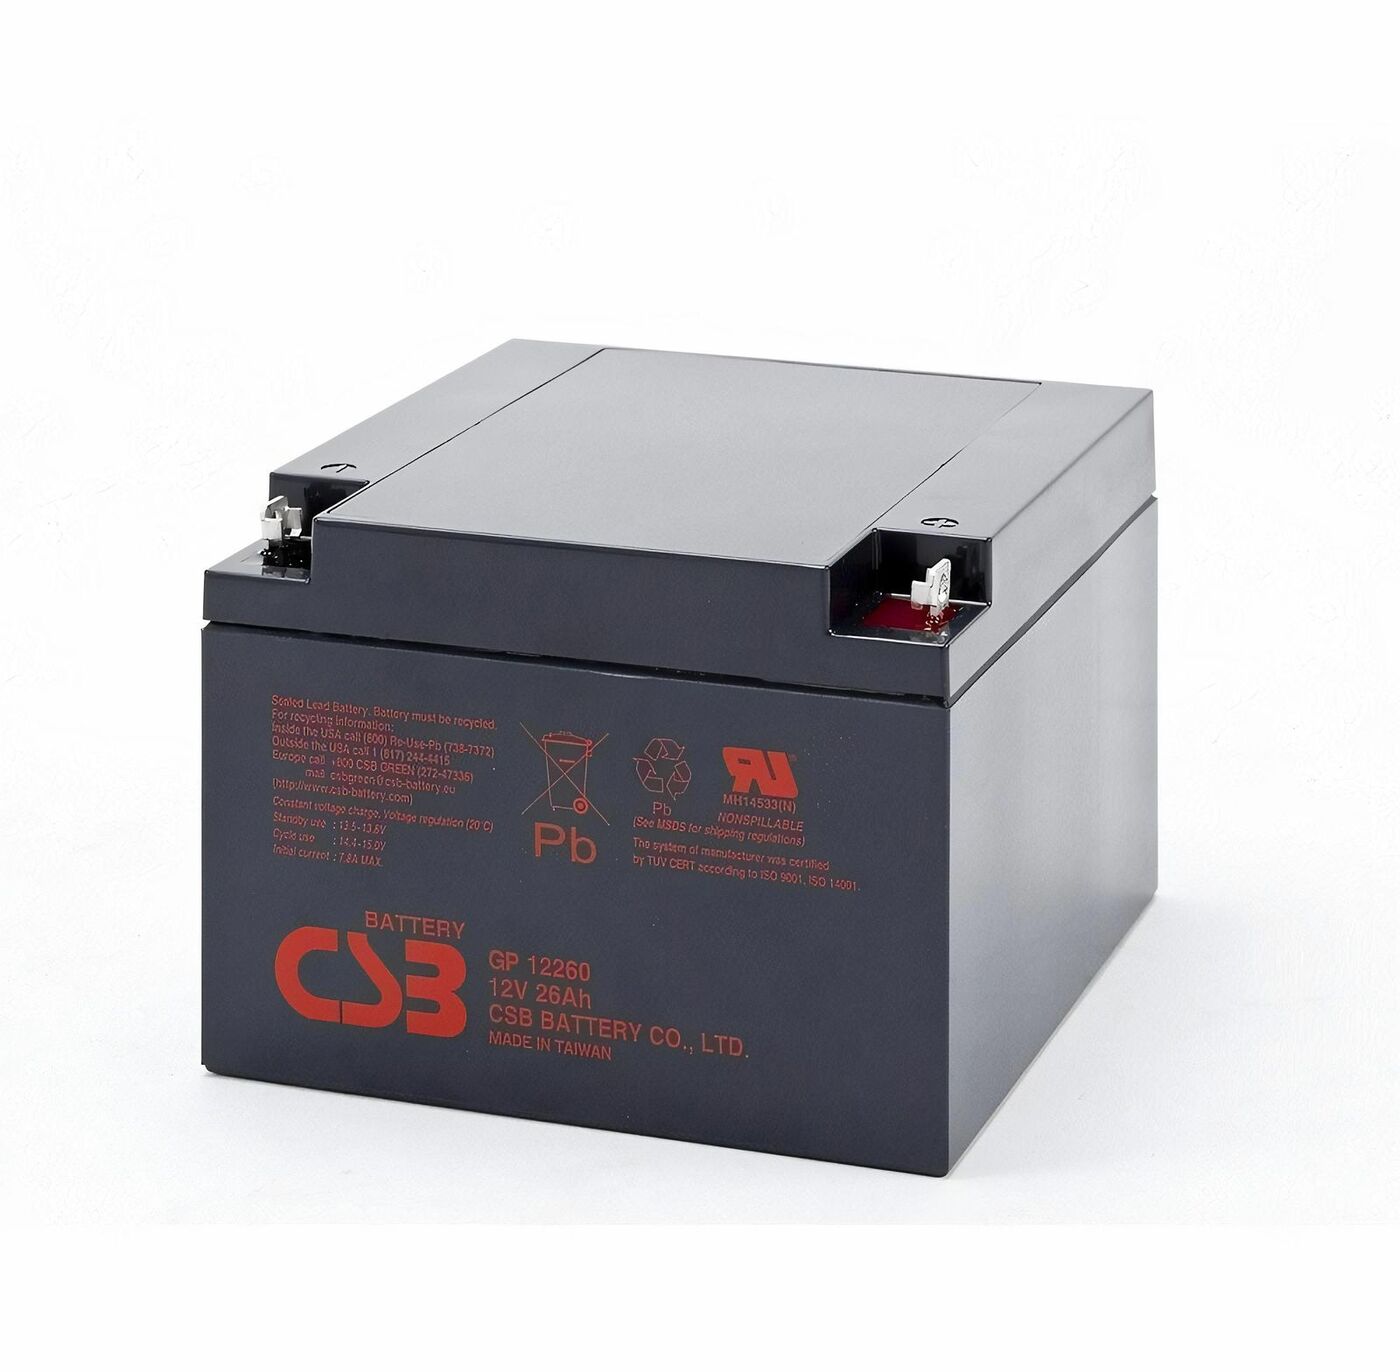 Свинцово-кислотный аккумулятор CSB GP 12260 12V 26AH 239 аккумулятор свинцово кислотный la 445 4v 4 5ah